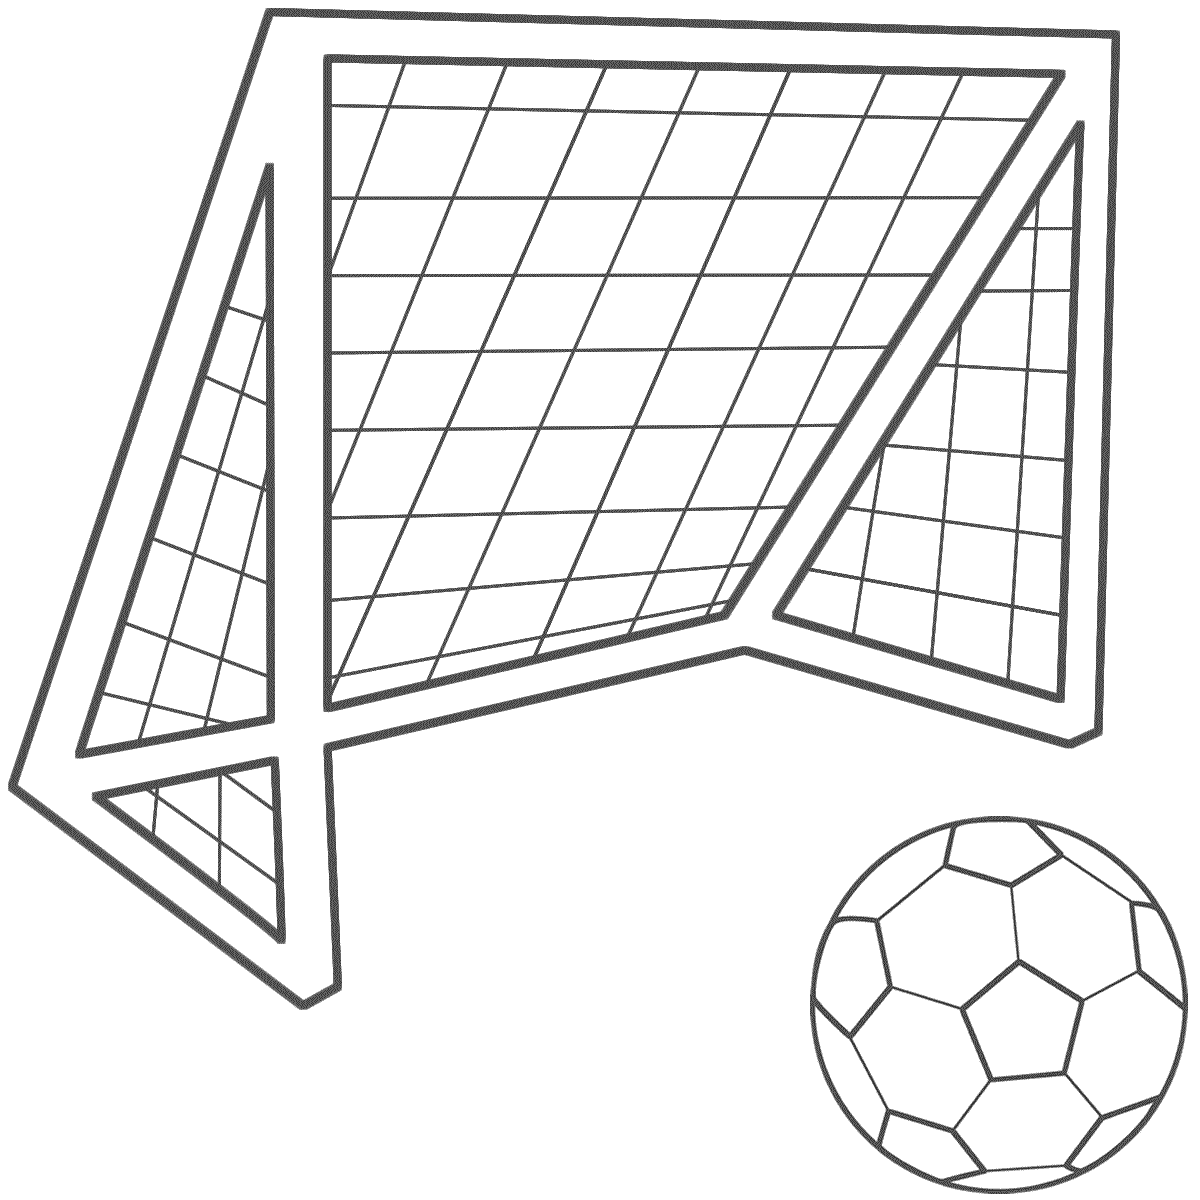 Soccer goal